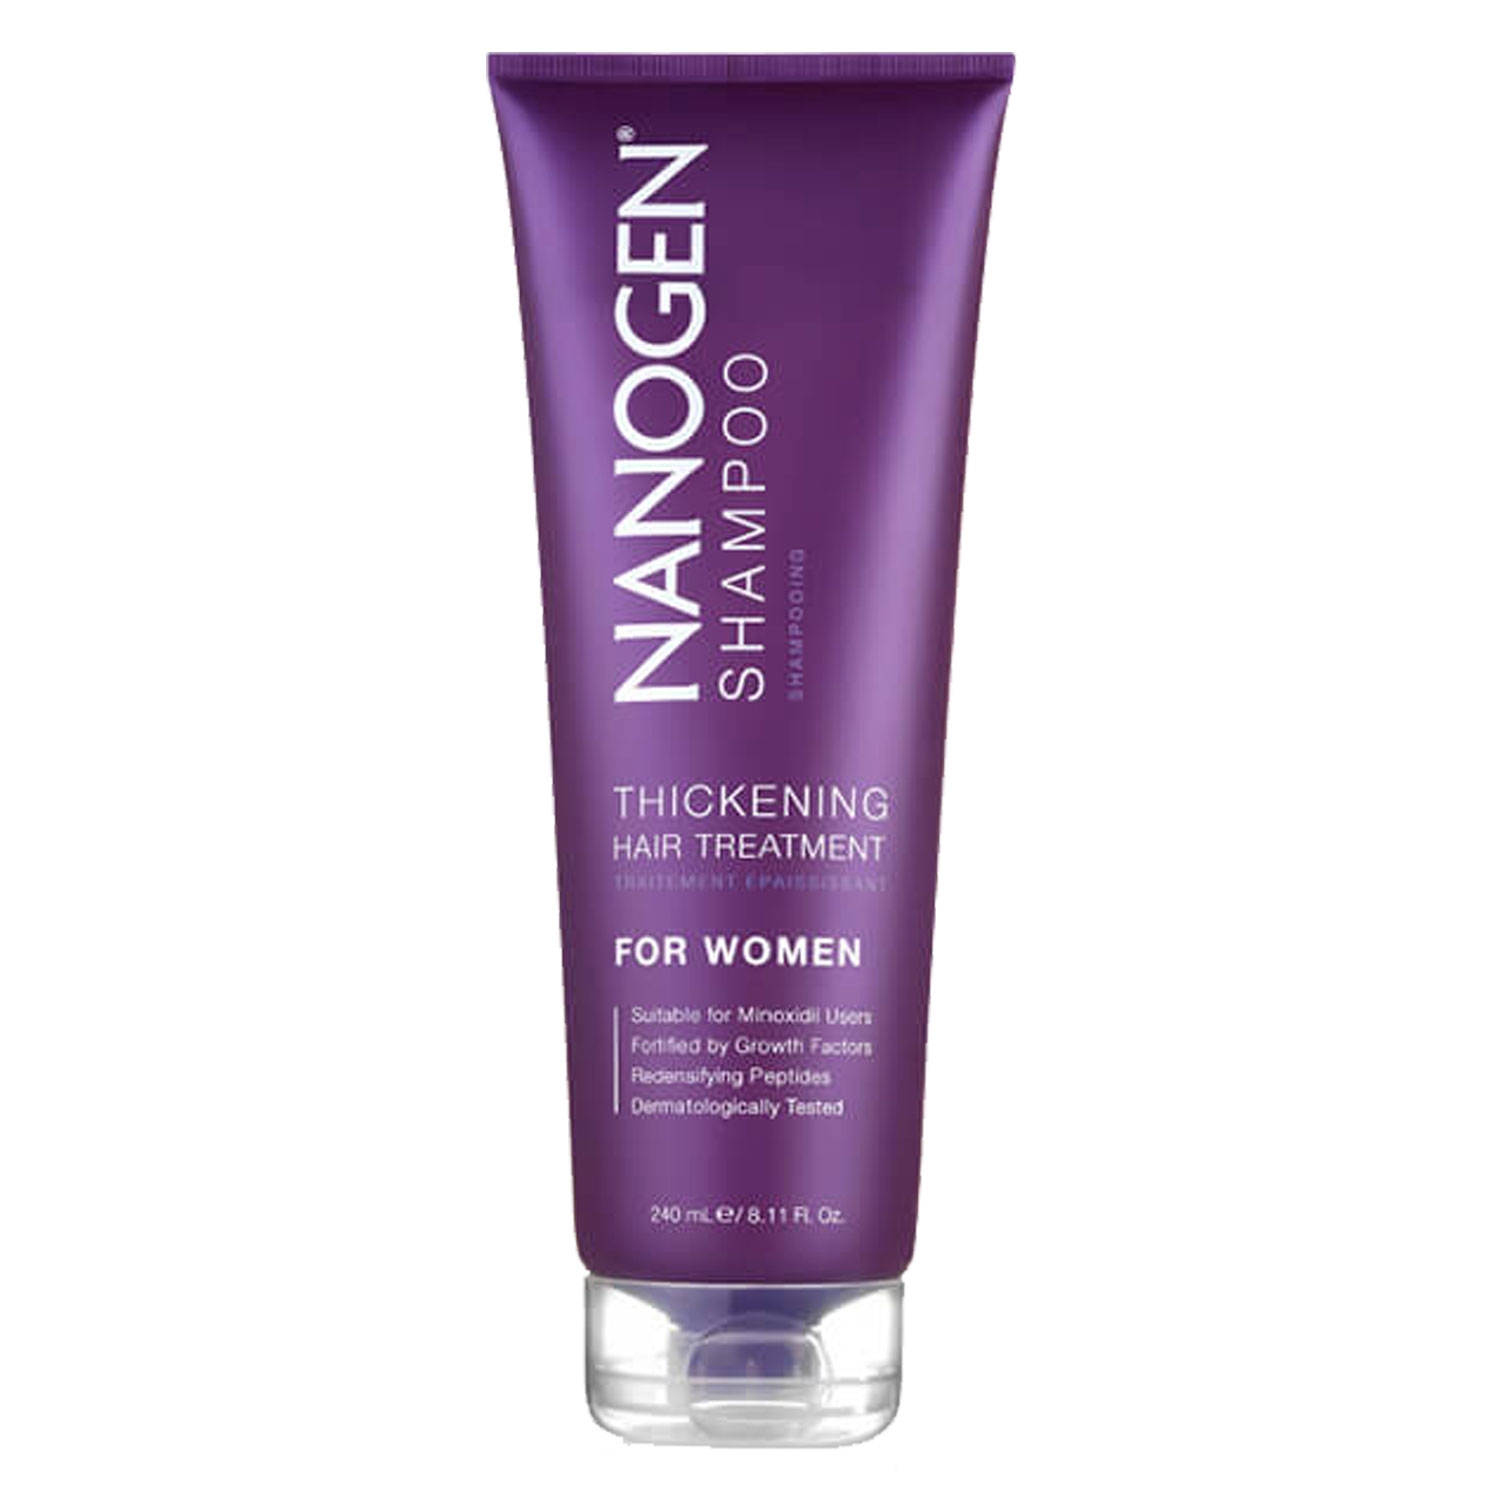 Produktbild von Nanogen - Thickening Treatment Shampoo For Women